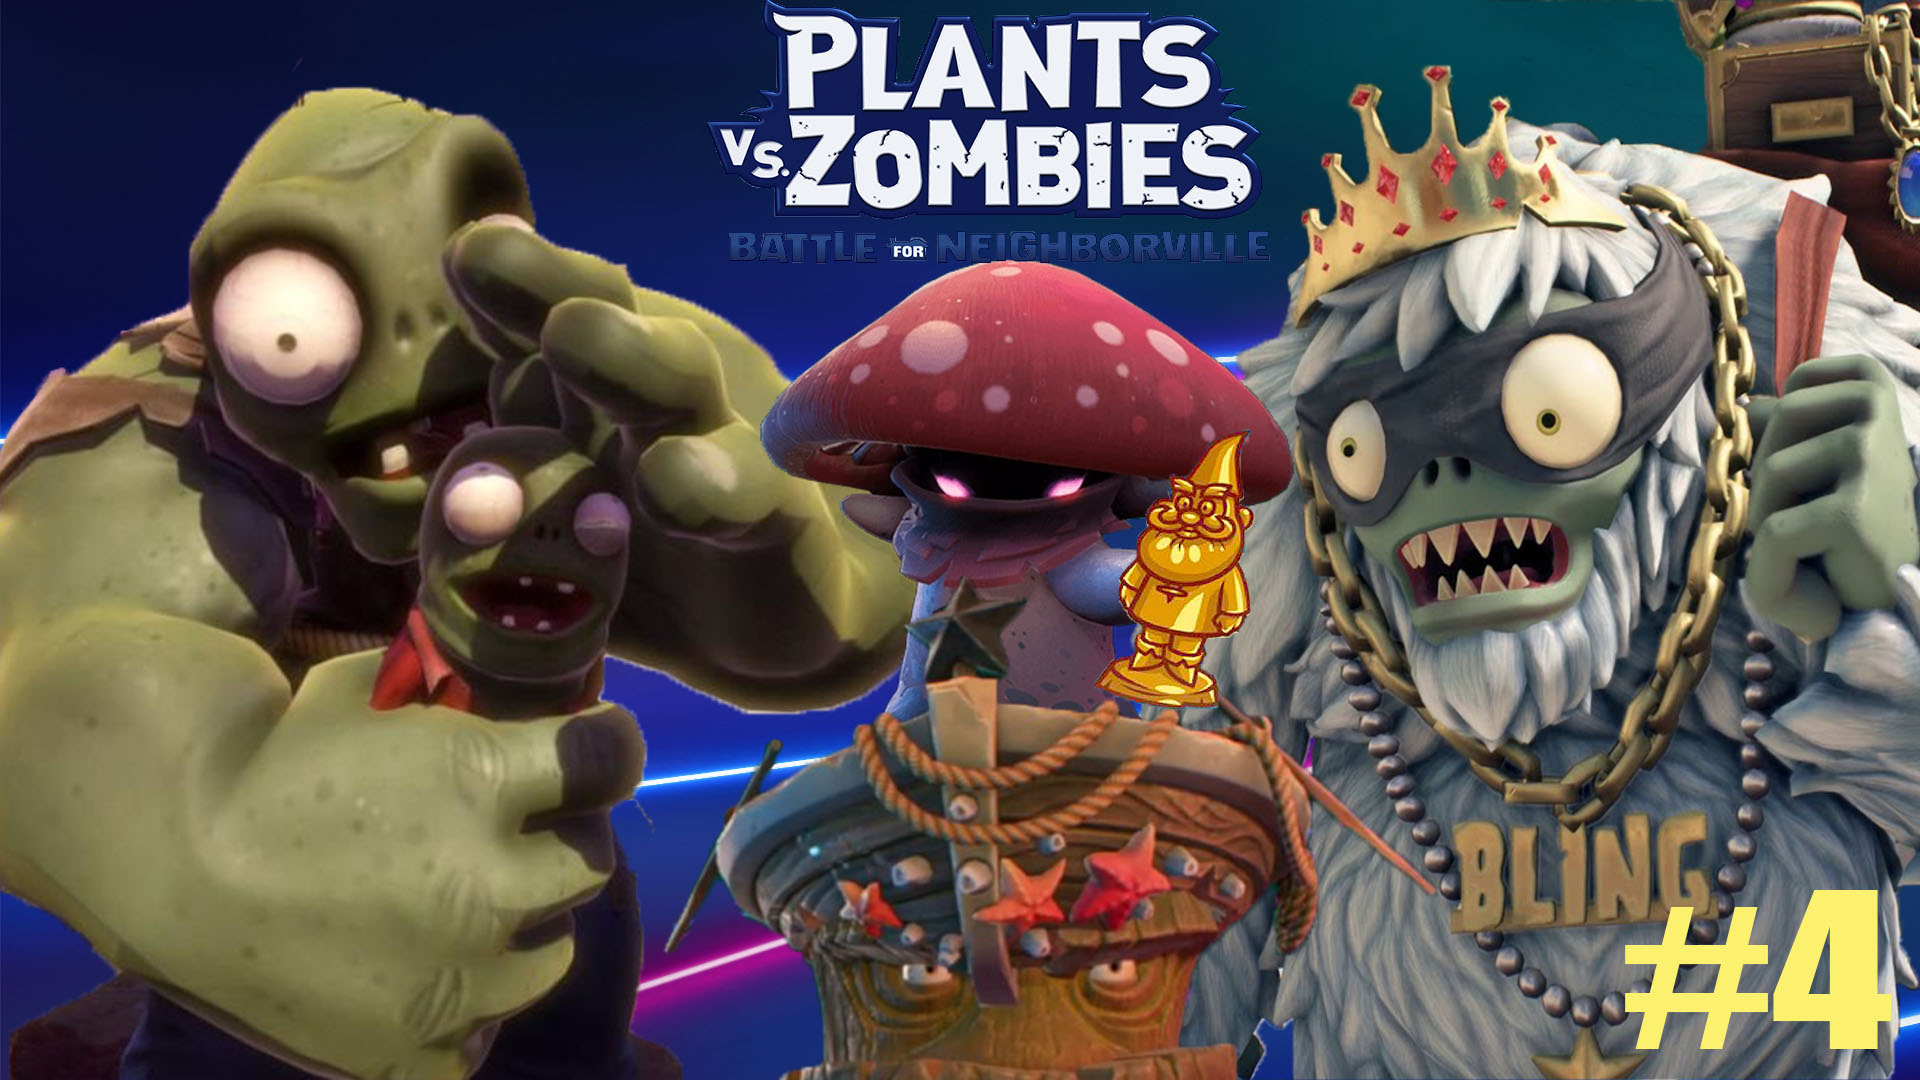 Plants vs zombies битва за нейборвиль купить ключ стим фото 45